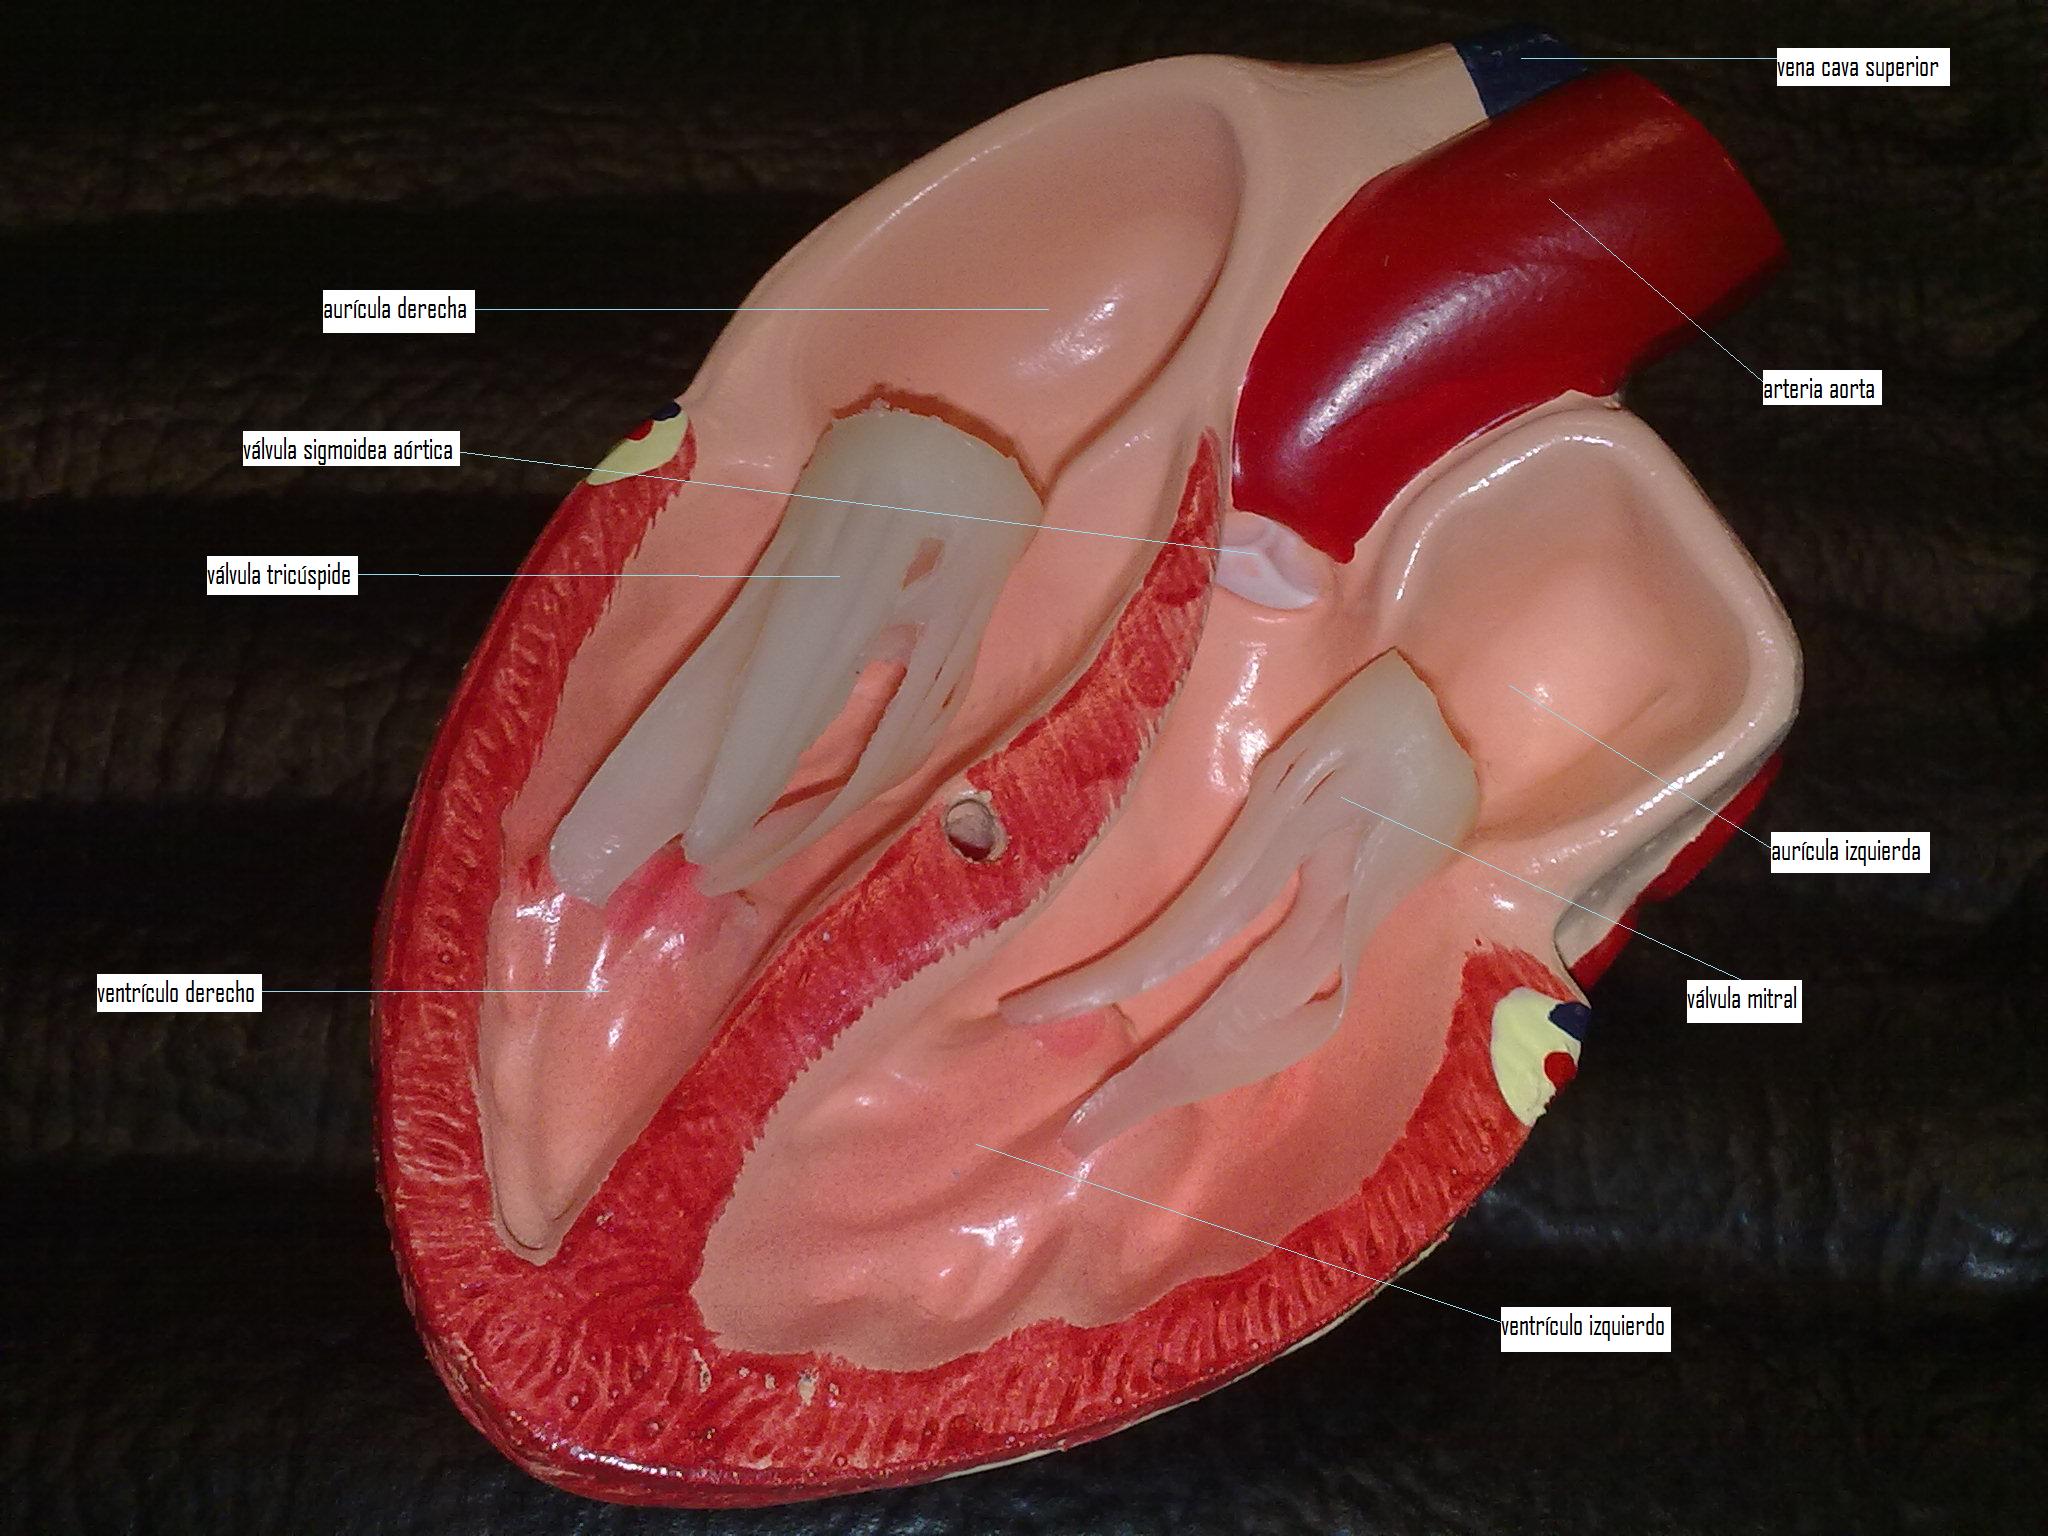 ¿como funciona el sistema circulatorio?